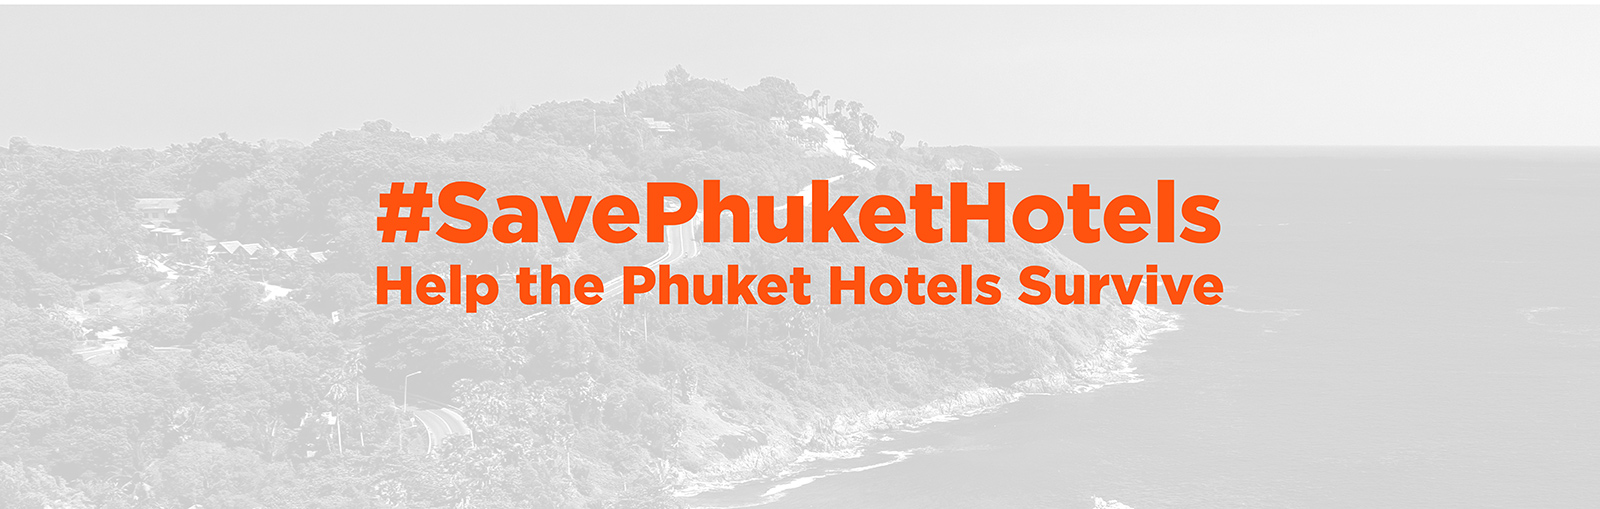 #SavePhuketHotels - Help the Phuket Hotels Survive